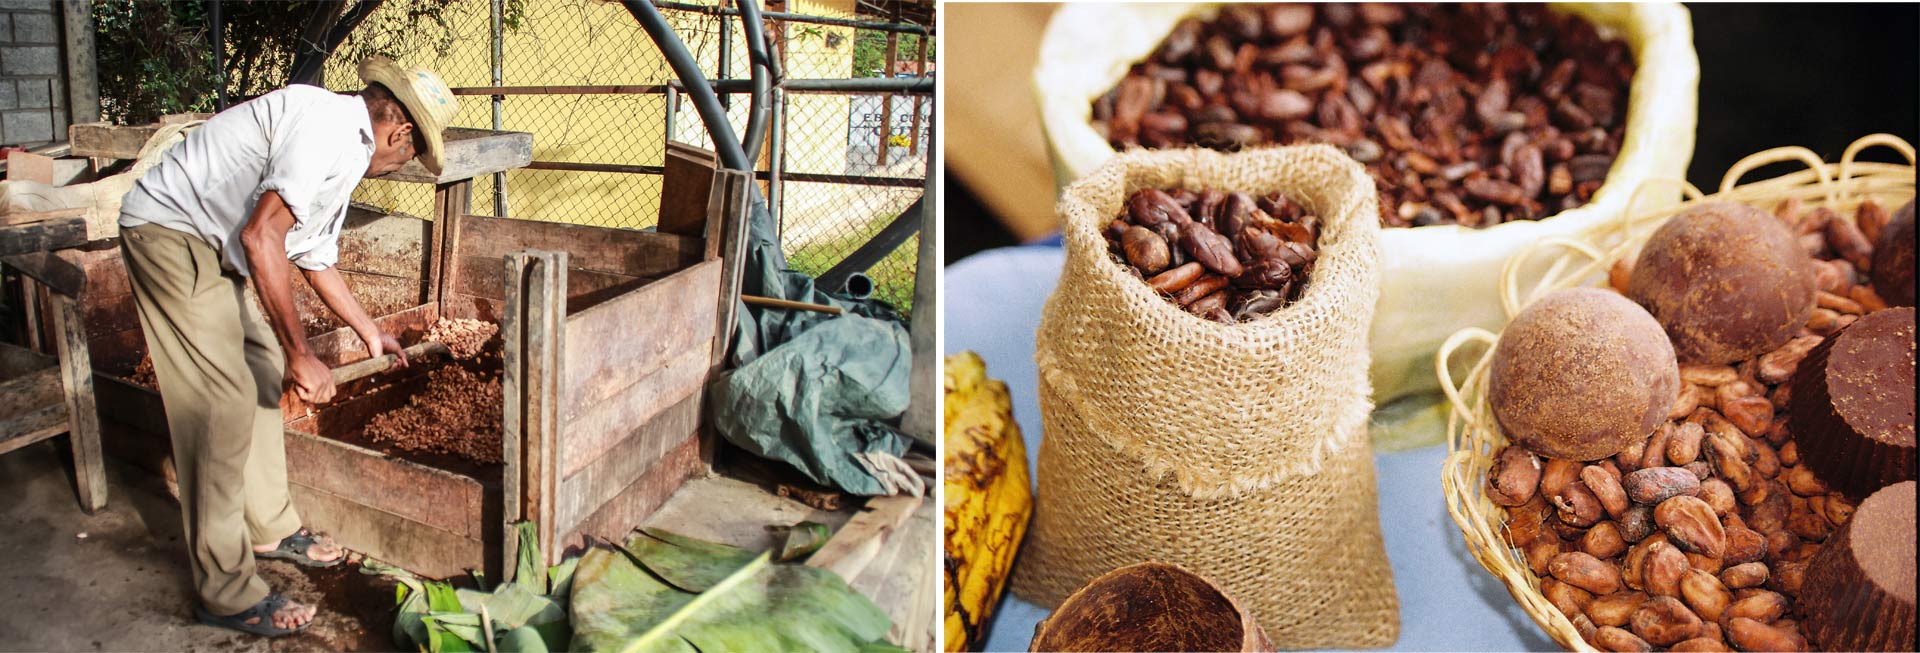 "Foto Cacao Venezuela" ya tiene los ganadores de la edición de este año, donde fotógrafos captaron la esencia de este producto en imágenes